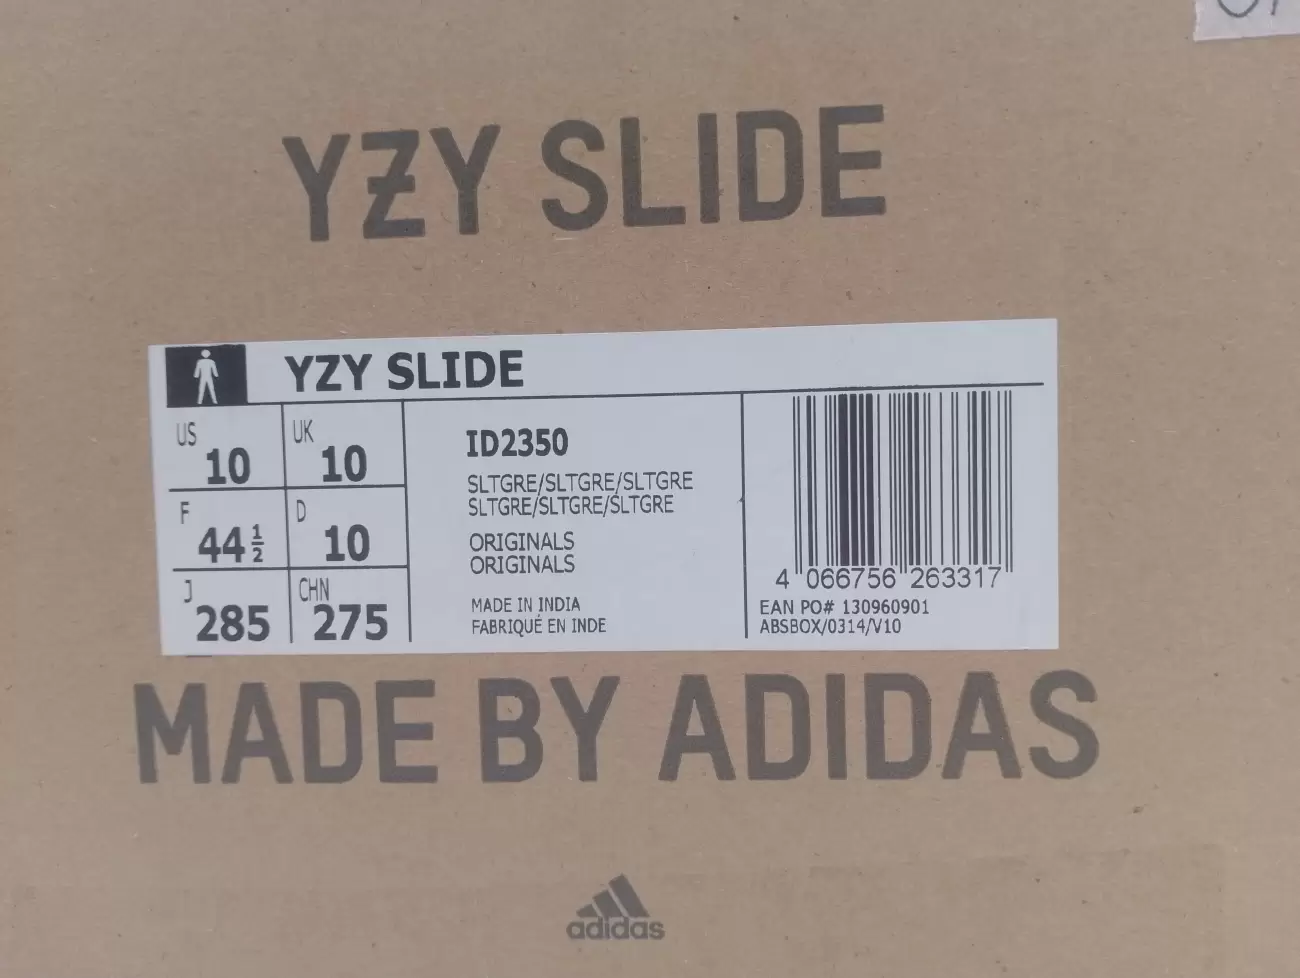 43345 - Adidas Yeezy Slide Slate Grey | Item Details - AfterMarket